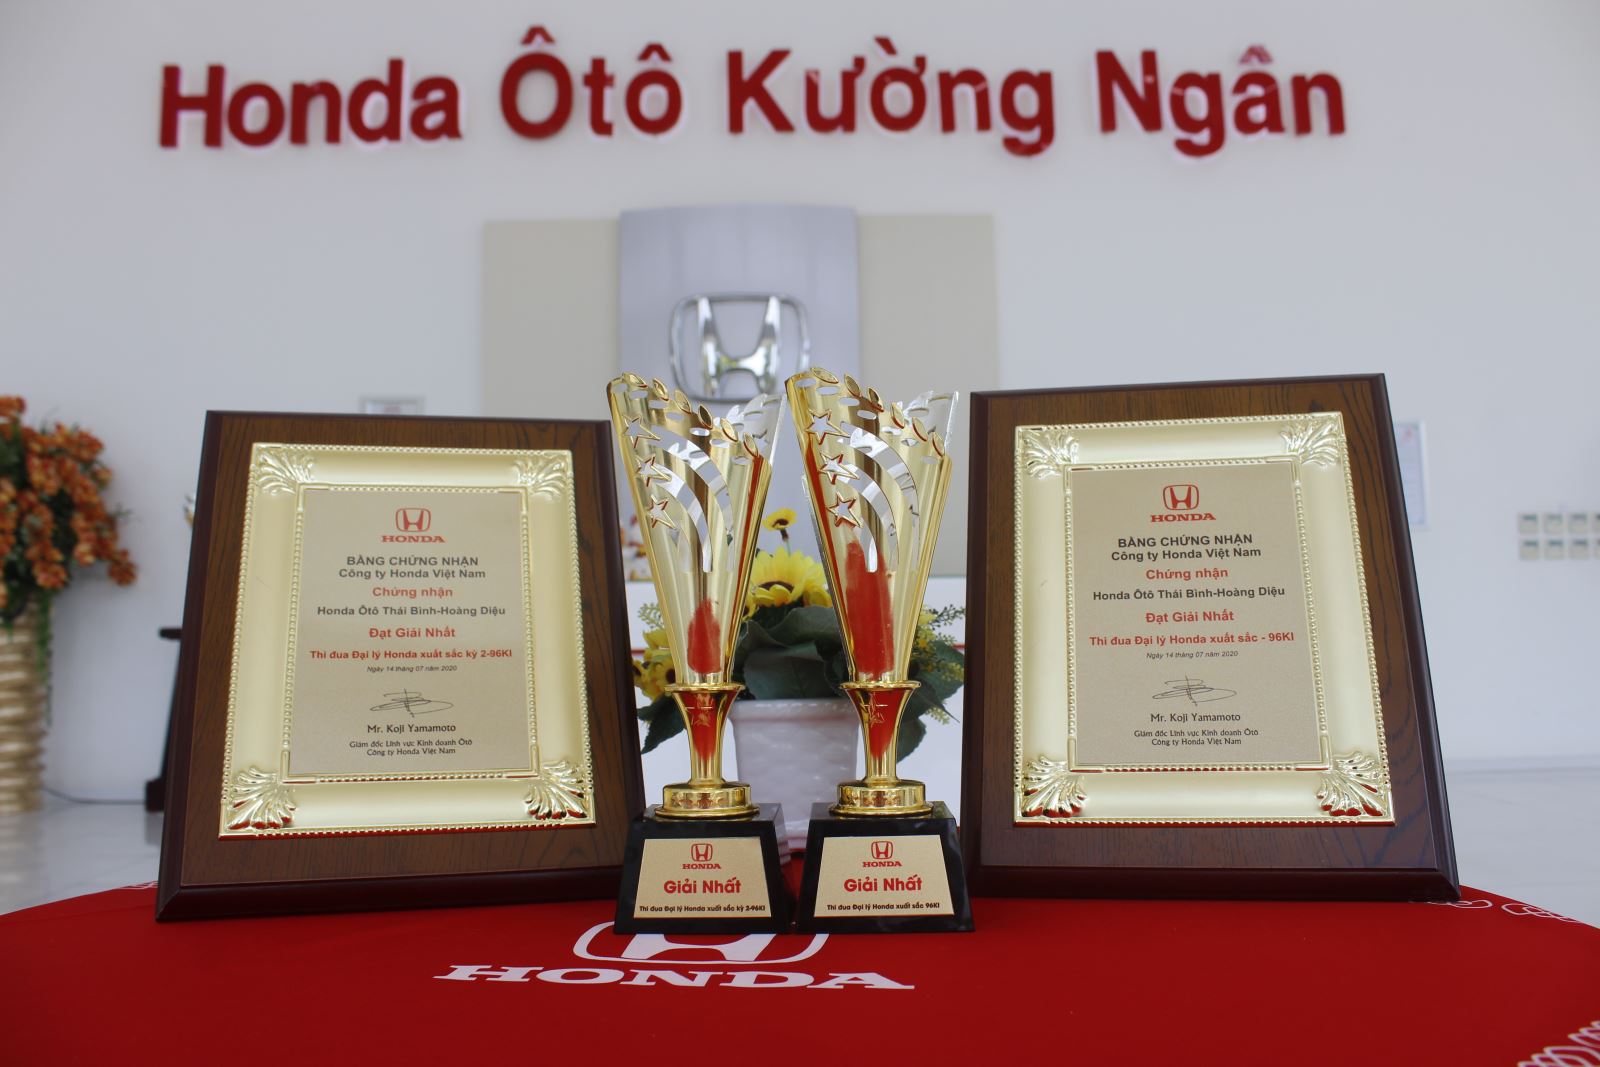 Chúc Mừng Honda Ôtô Thái Bình - Hoàng Diệu Đạt Giải Nhất Đại Lý Honda Xuất Sắc Ki96 và Đạt Giải Nhất Đại Lý Honda Xuất Sắc Kỳ II- Ki96